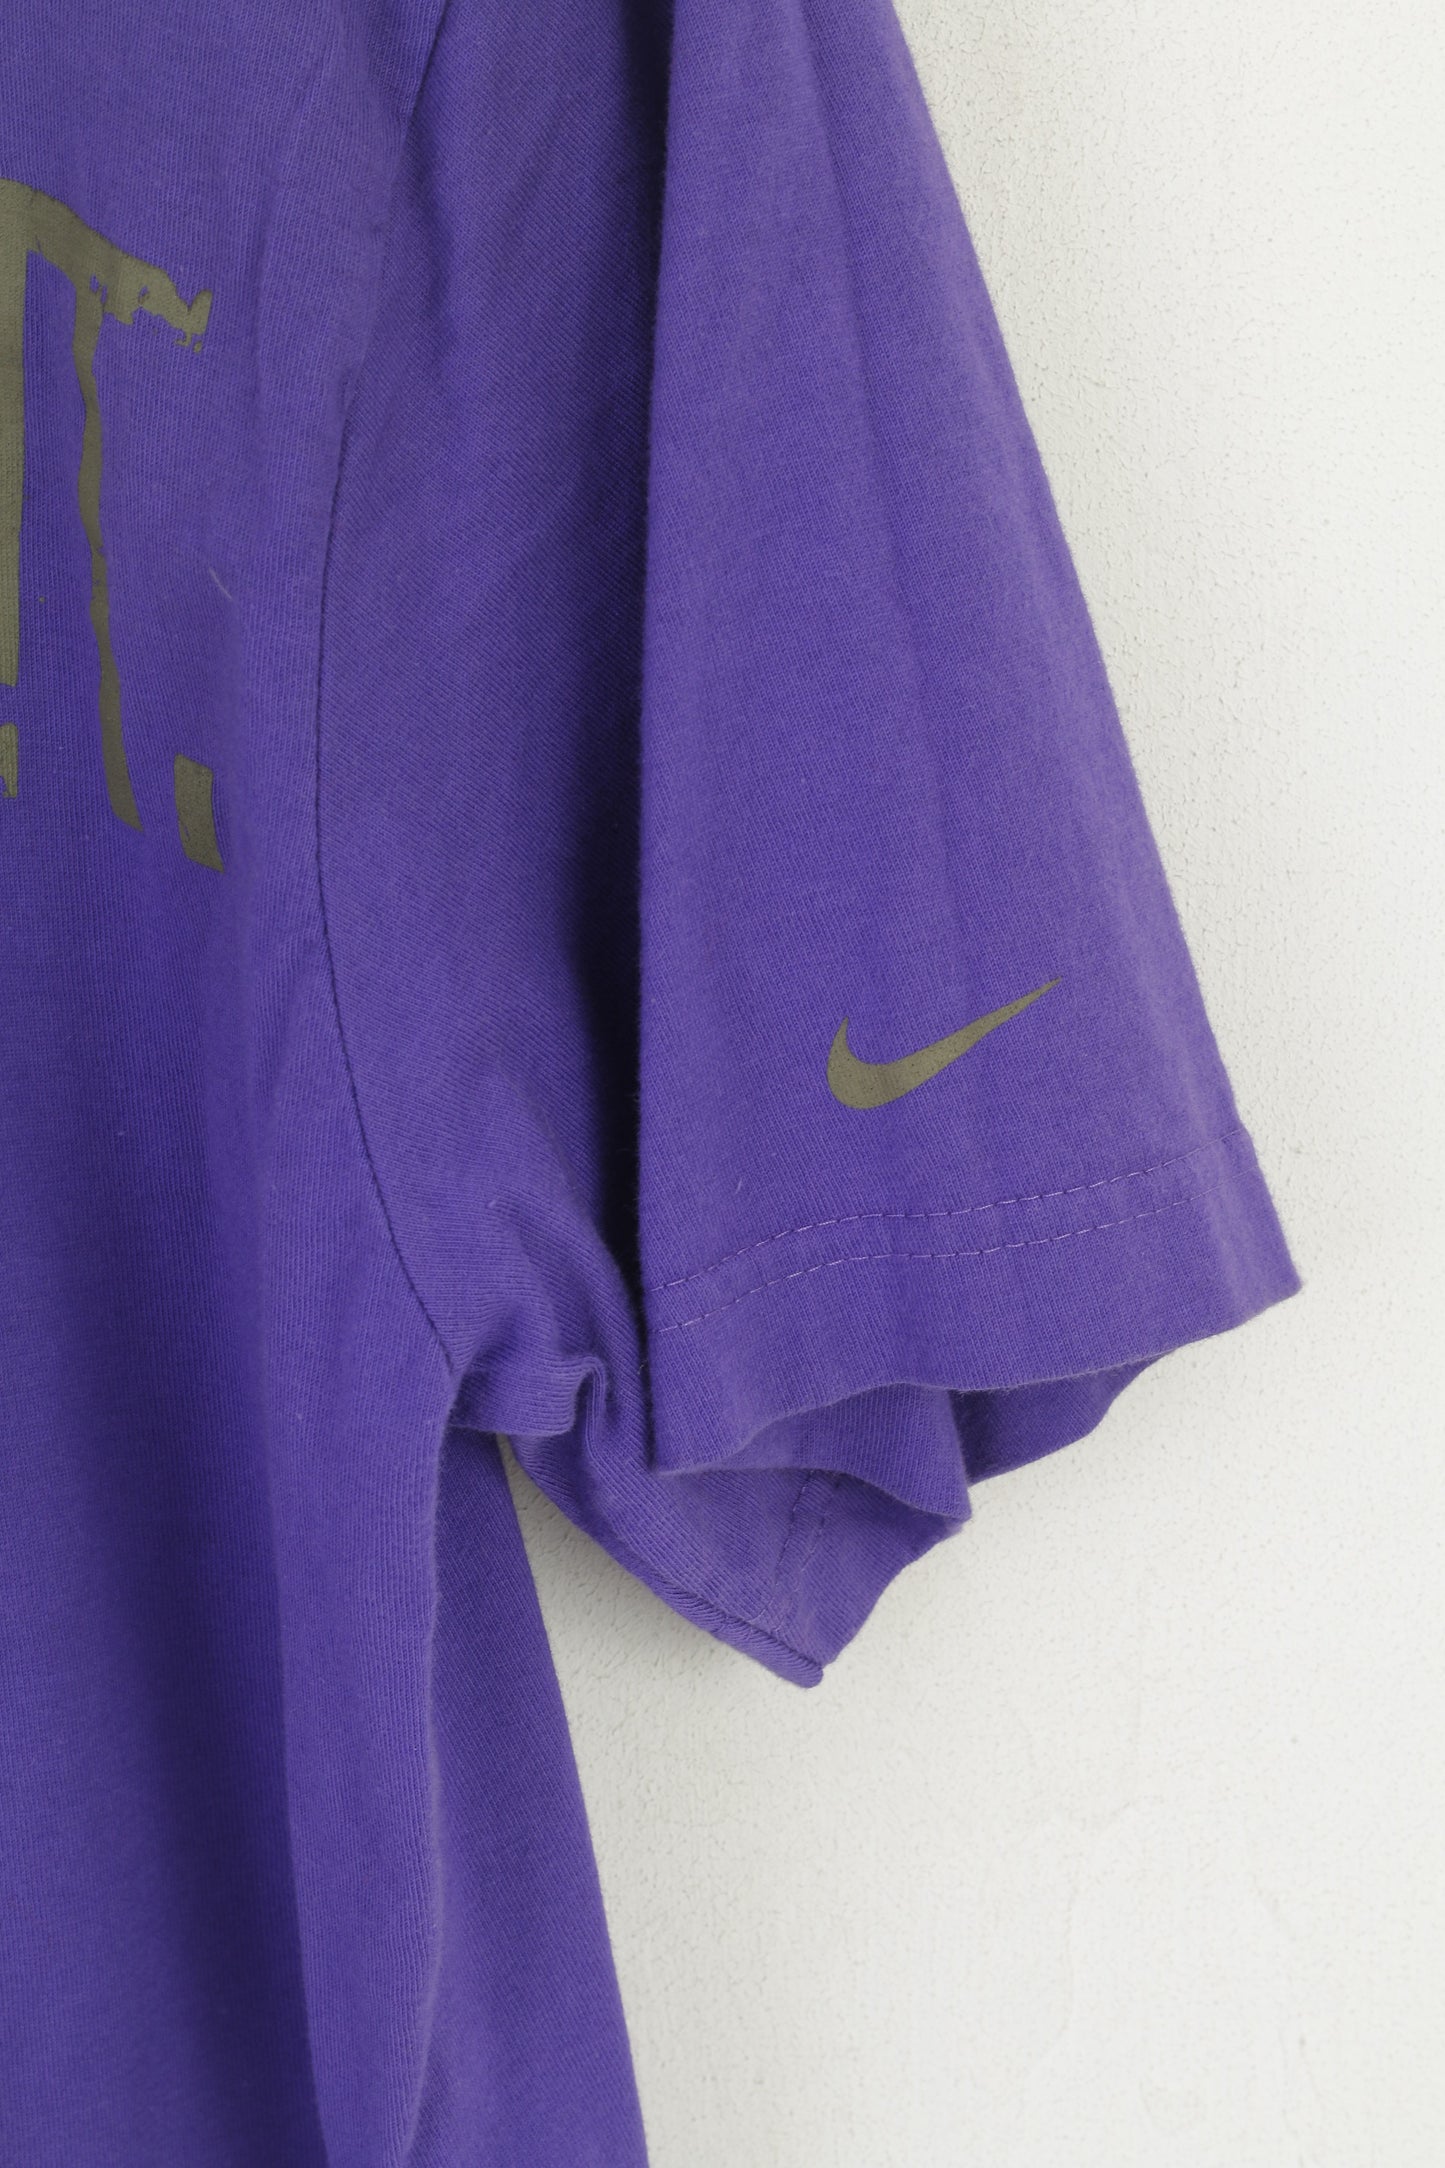 Nike Men L Shirt Purple Cotton Graphic Just Do It Standard Fit Sport Top